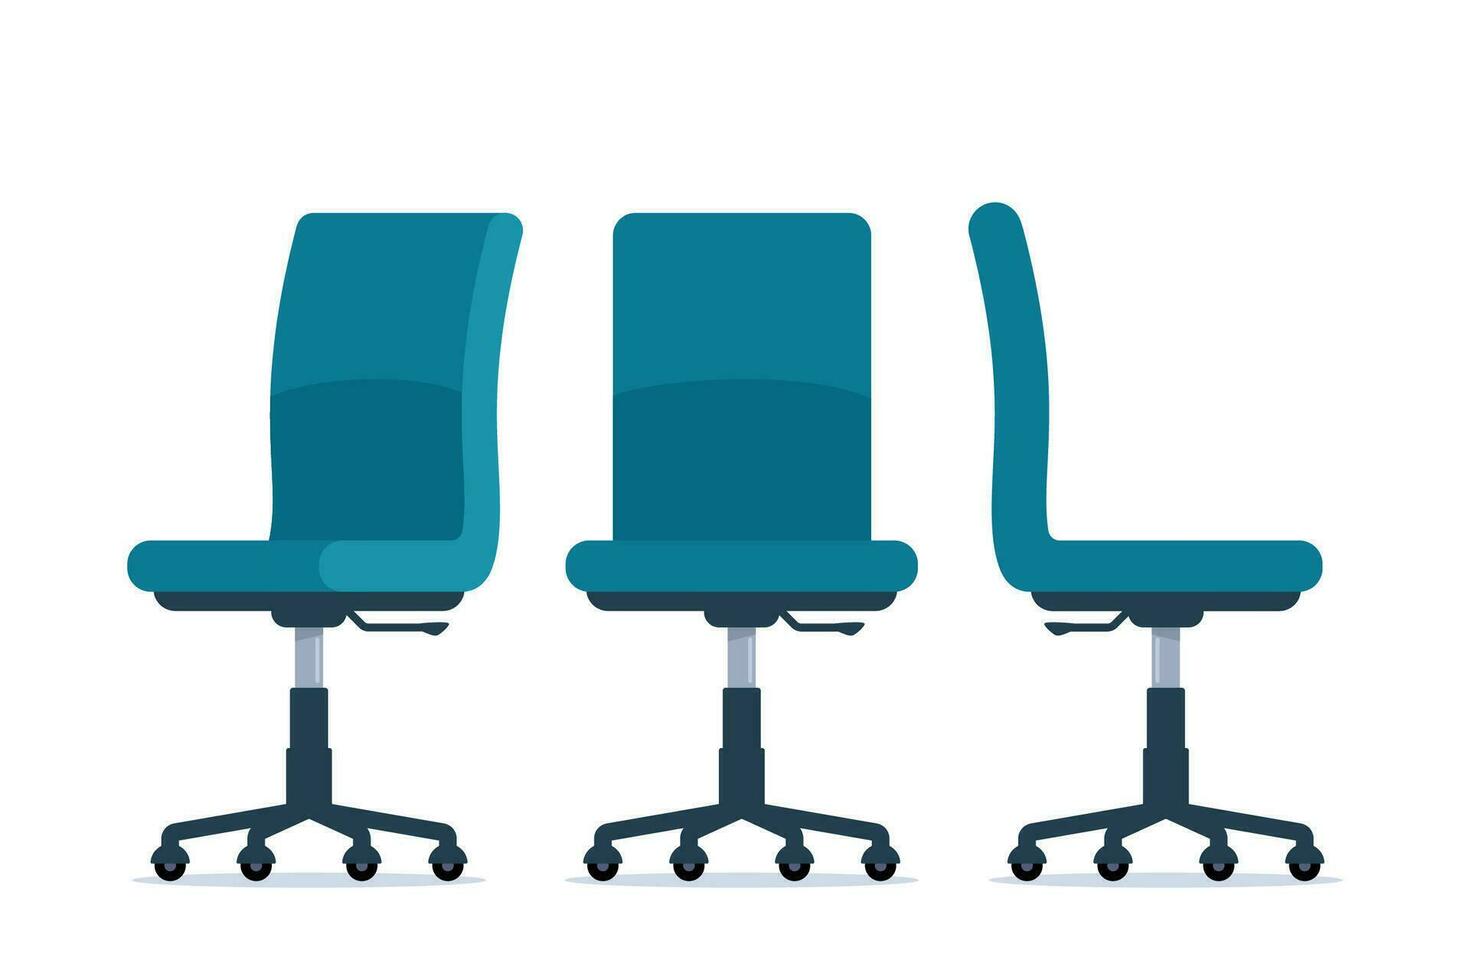 ufficio sedia nel vario punti di Visualizza. mobilia per ufficio interno nel piatto stile. vettore illustrazione.